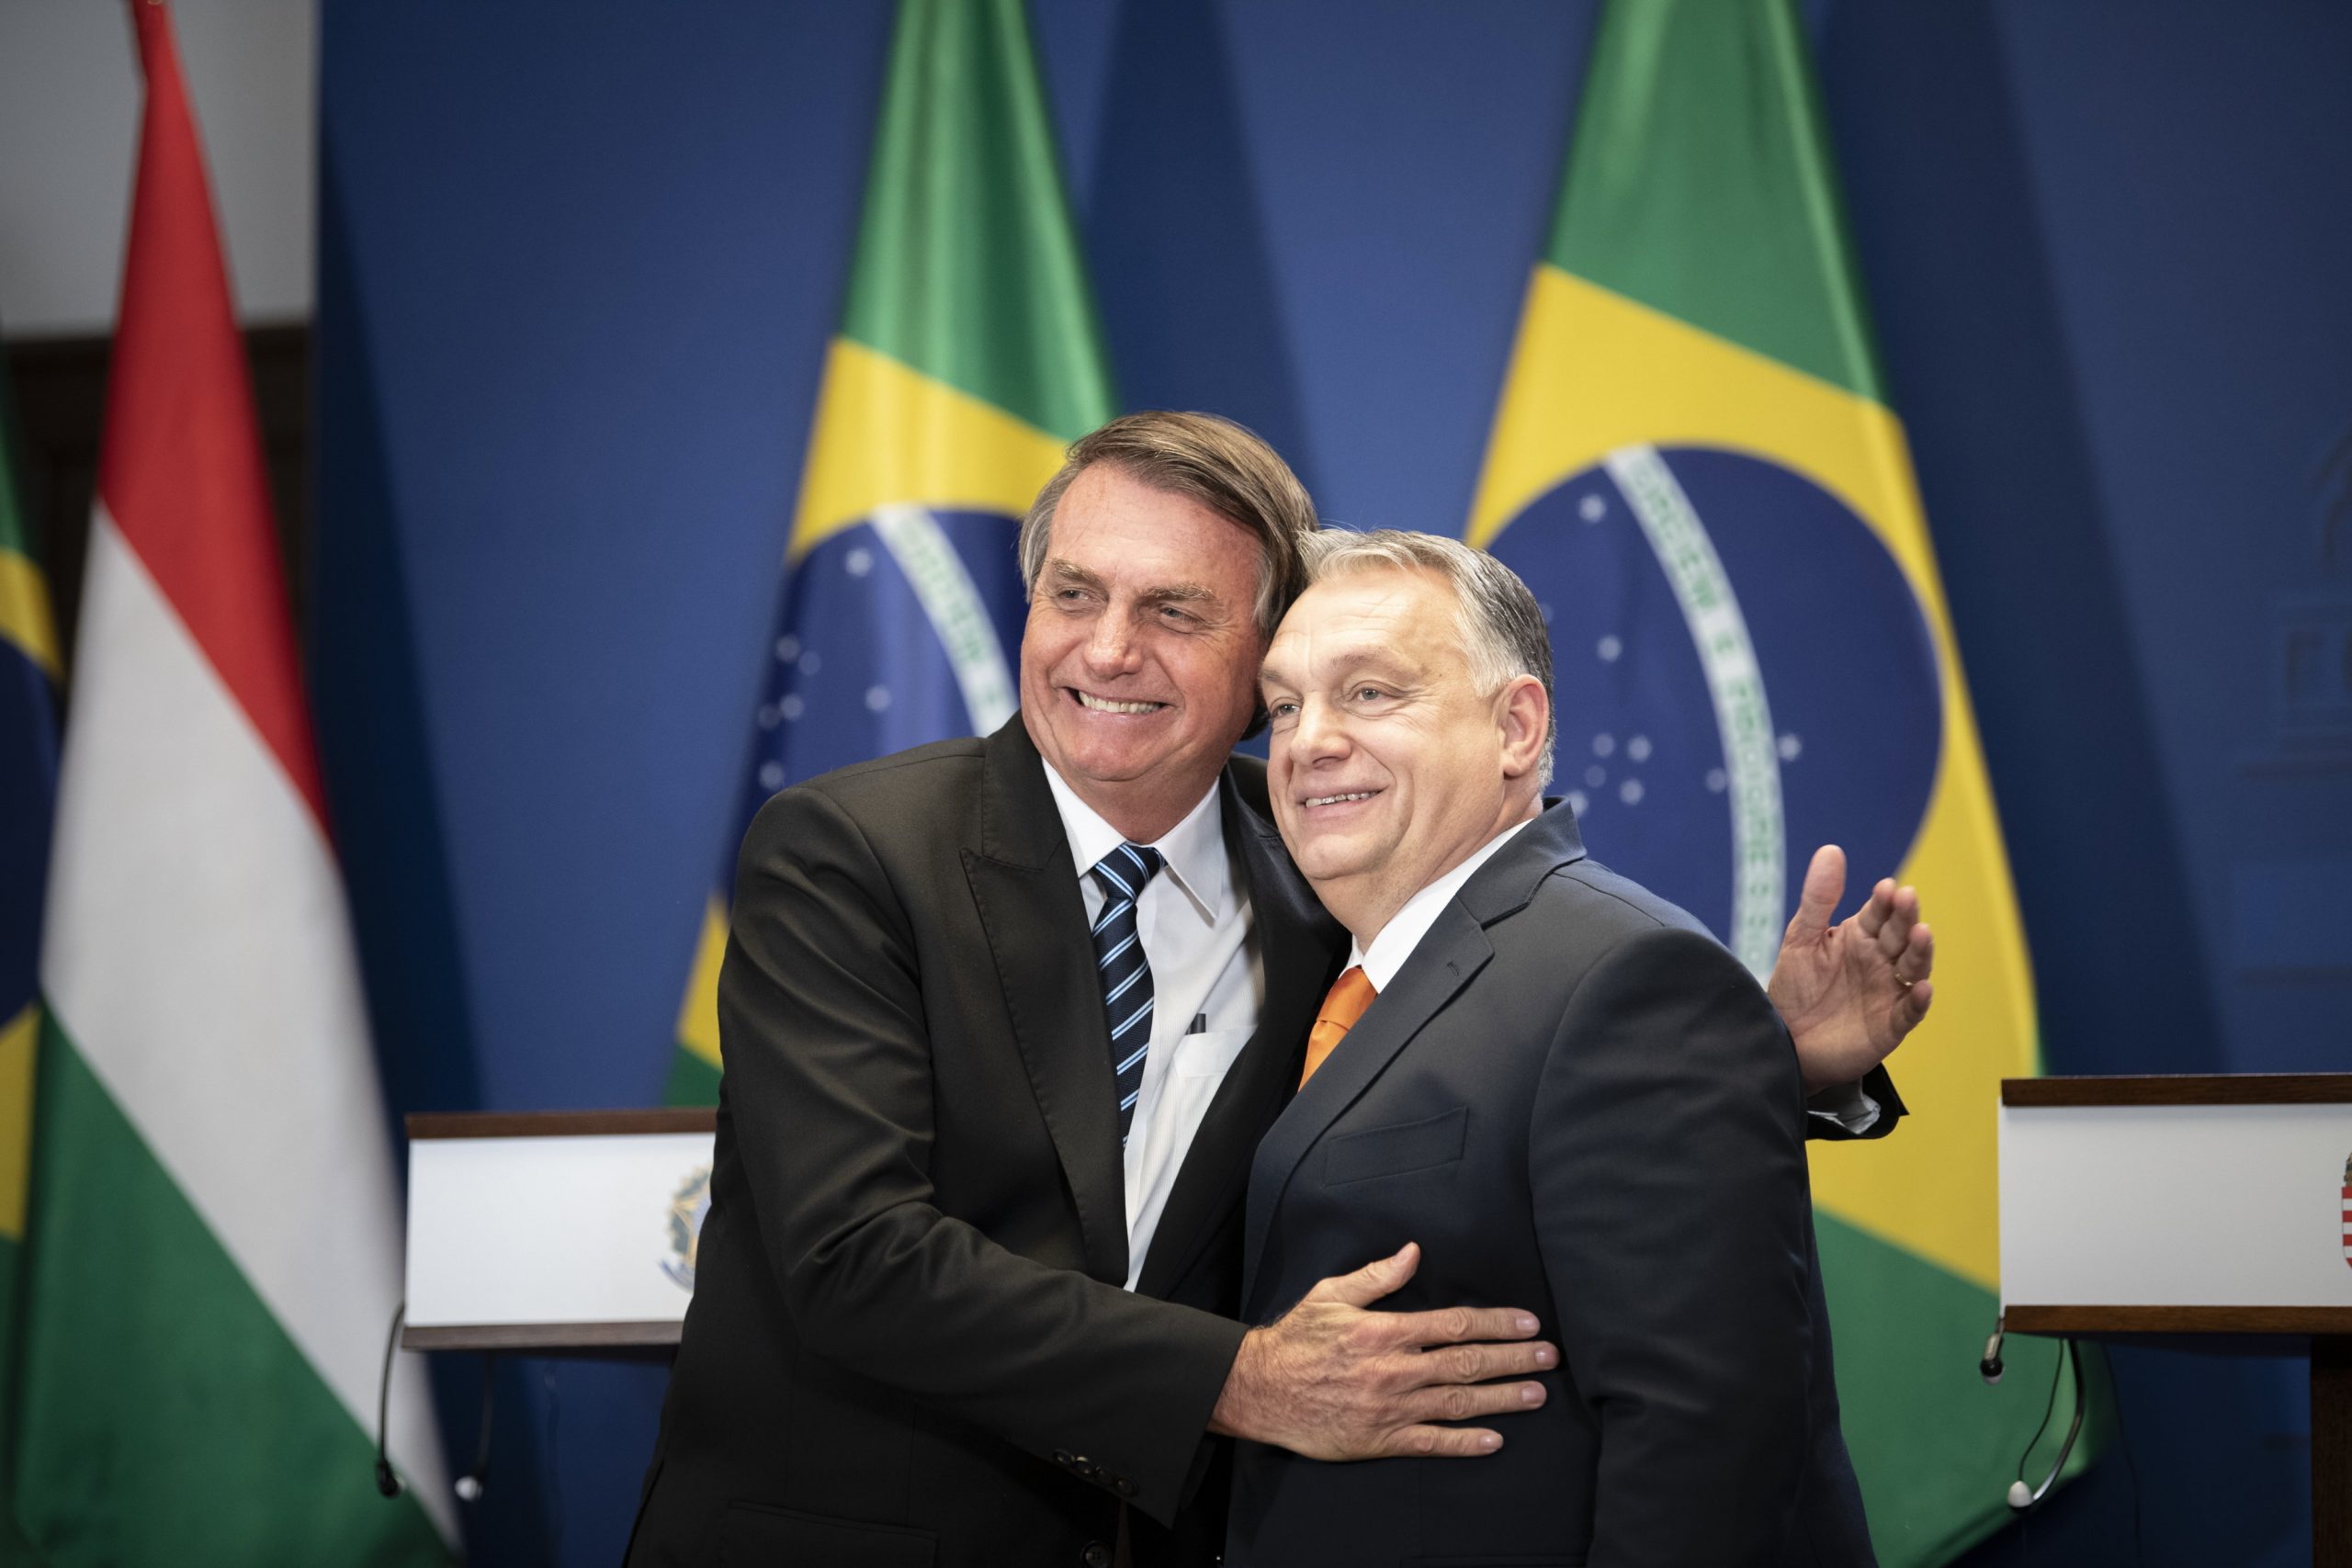 Orbánovo srečanje v Bolzanu: Madžarska in Brazilija 